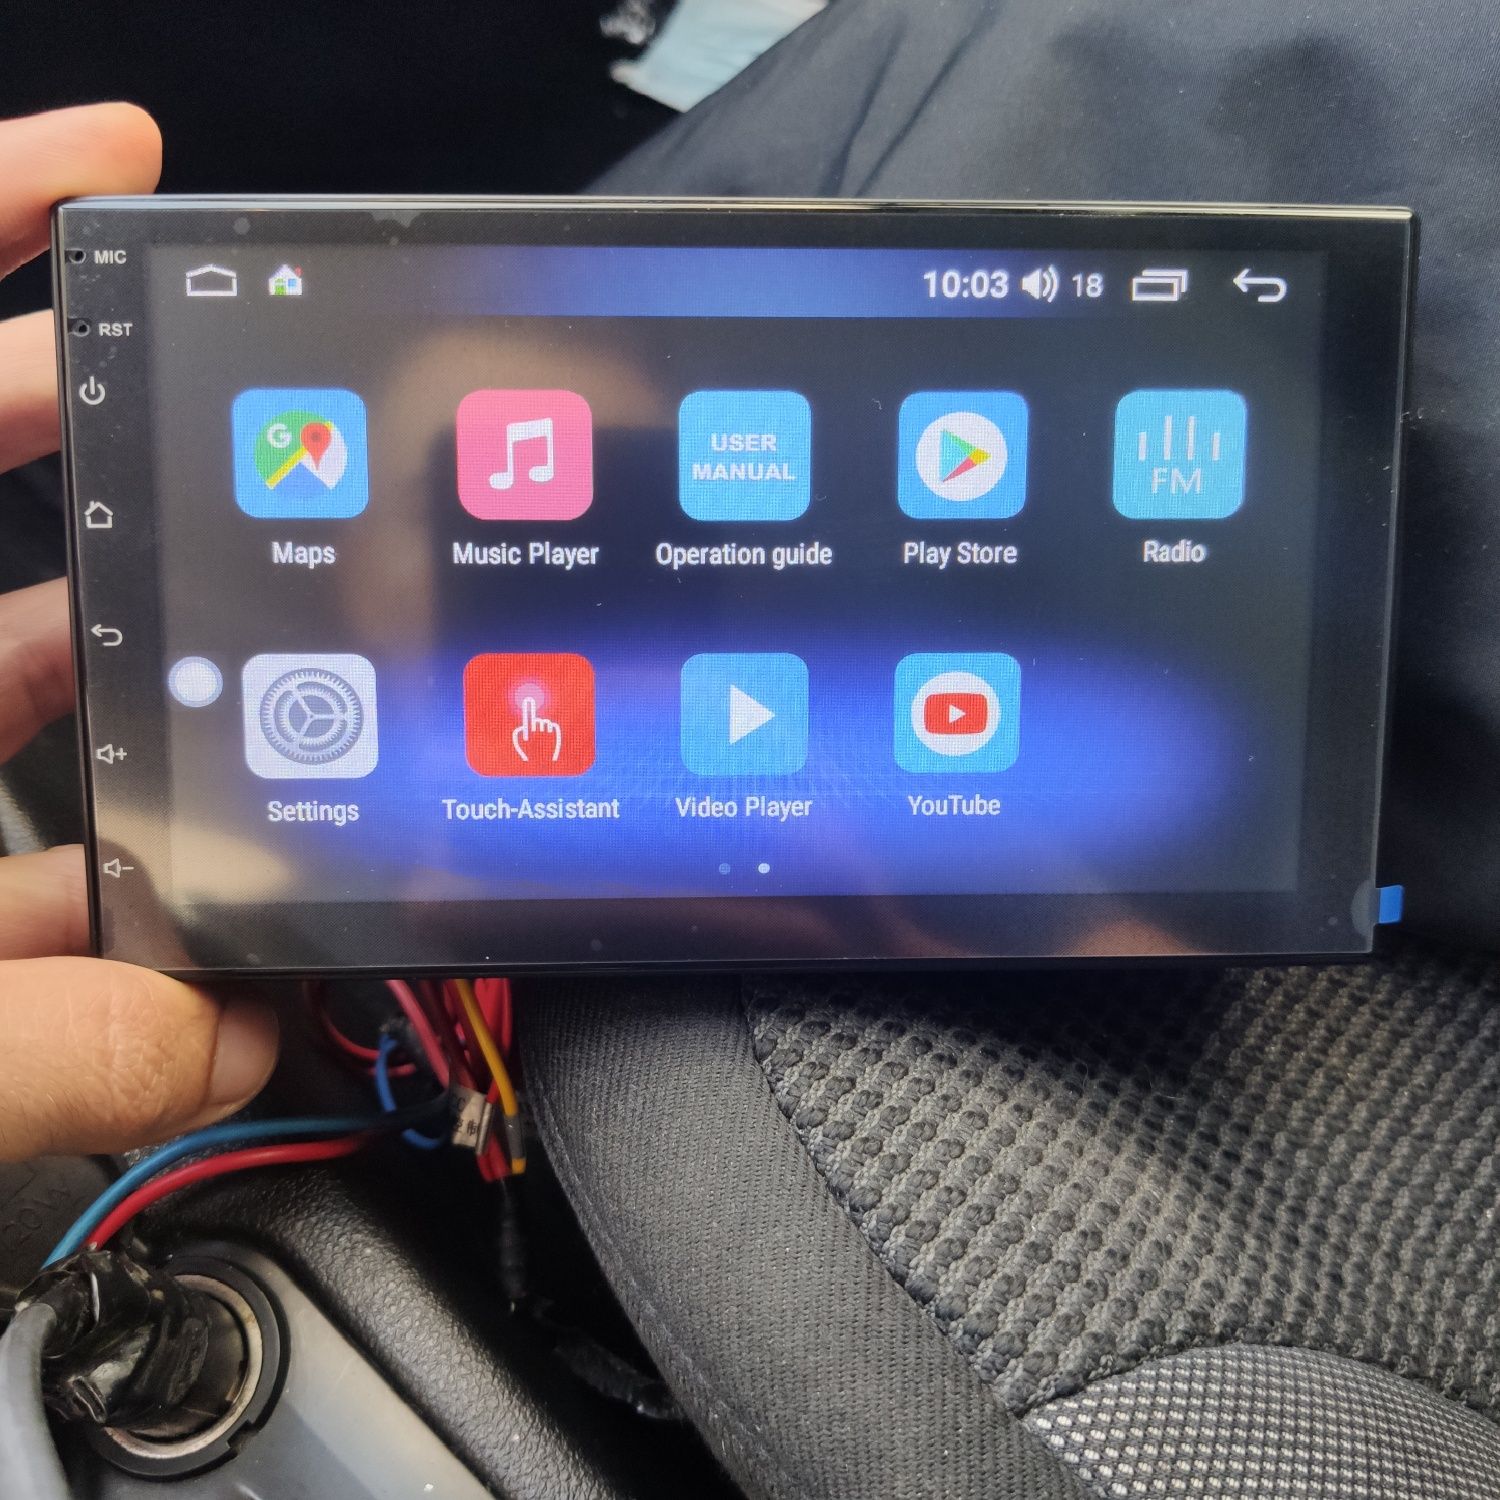 Auto rádios android 7 polegadas com Gps, bluetooth, , mp5 e muito mais